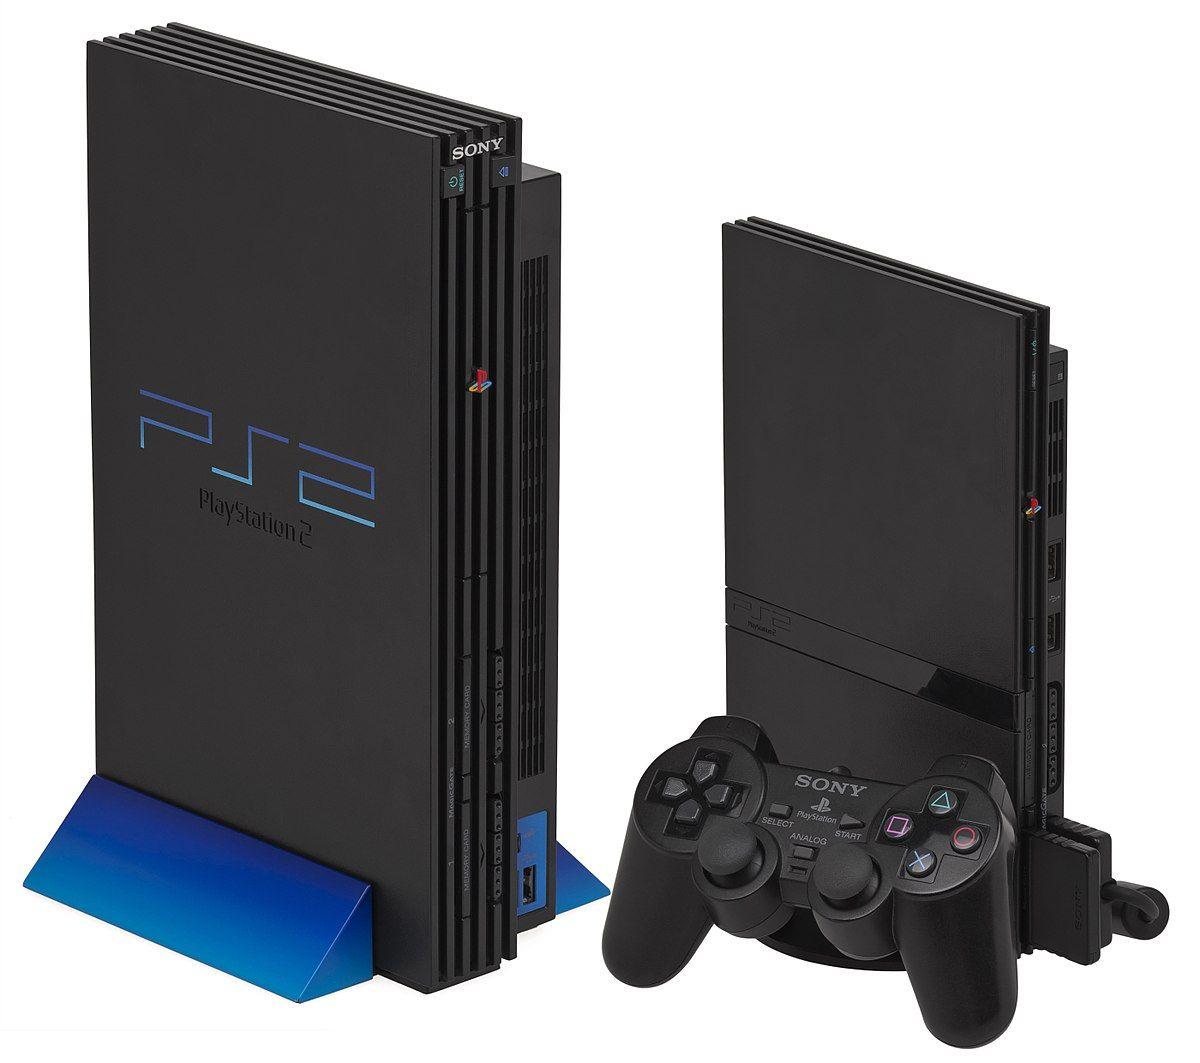 PS2 Logo - PlayStation 2